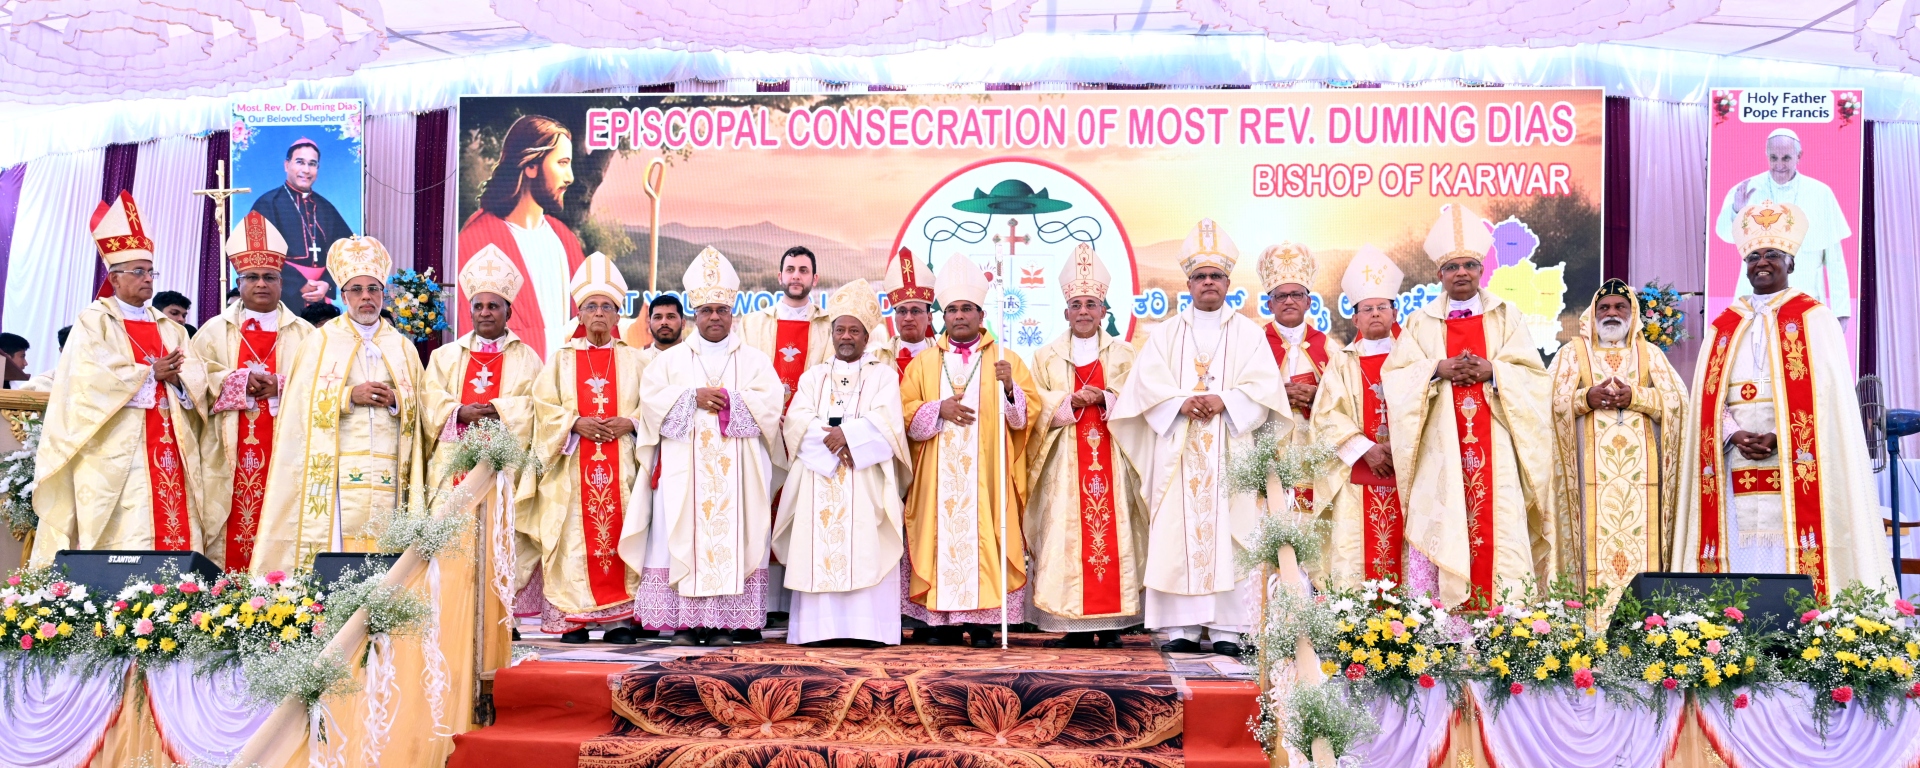 Bishop Duming Dias installed in Karwar diocese